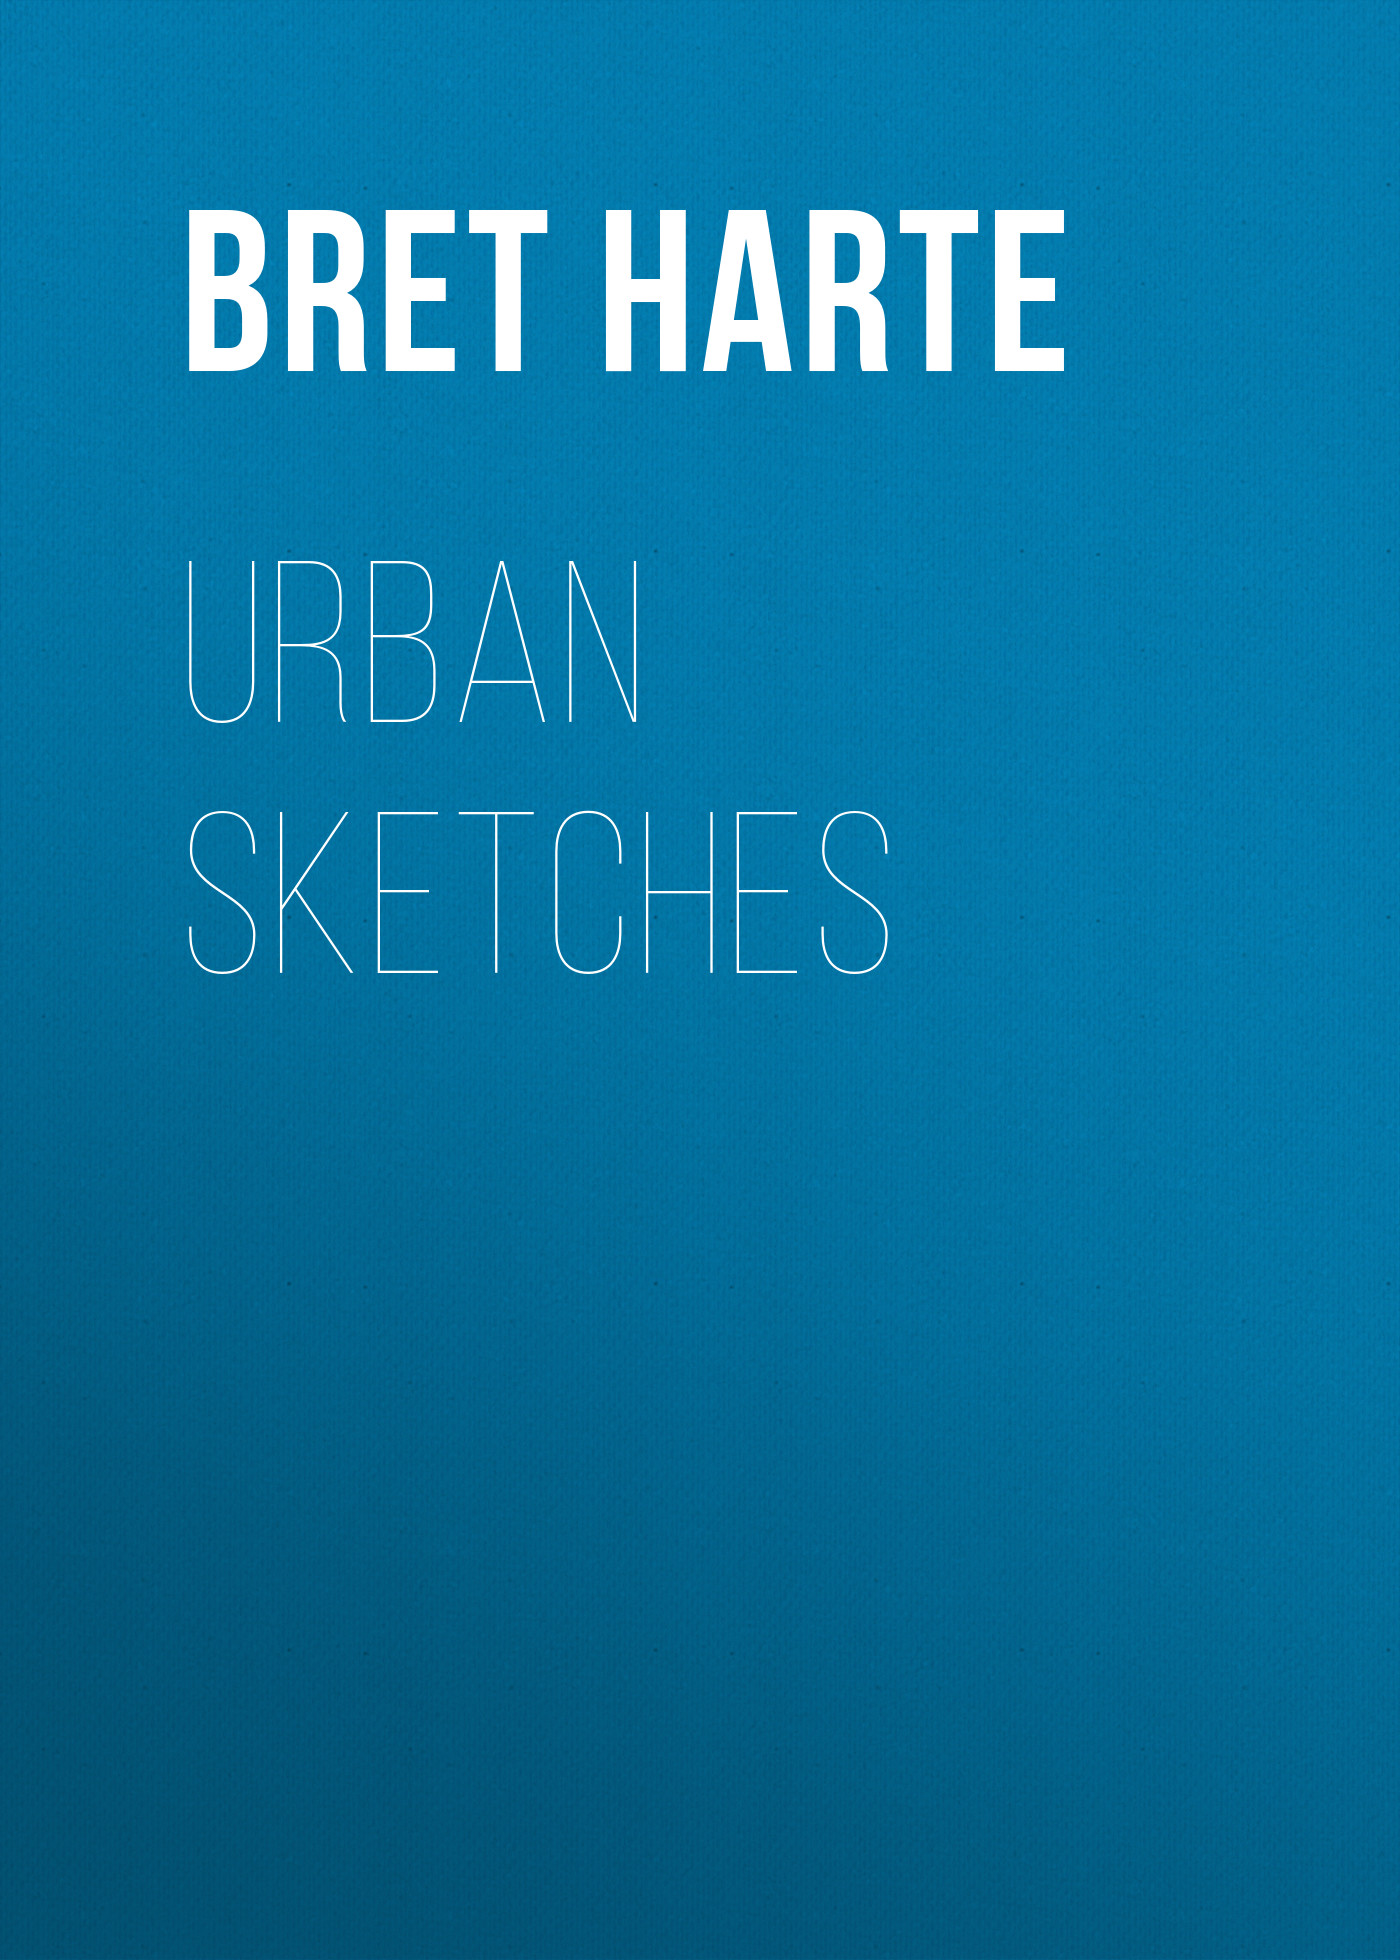 Книга Urban Sketches из серии , созданная Bret Harte, может относится к жанру Зарубежная фантастика, Литература 19 века, Зарубежная старинная литература, Зарубежная классика. Стоимость электронной книги Urban Sketches с идентификатором 36323748 составляет 0 руб.